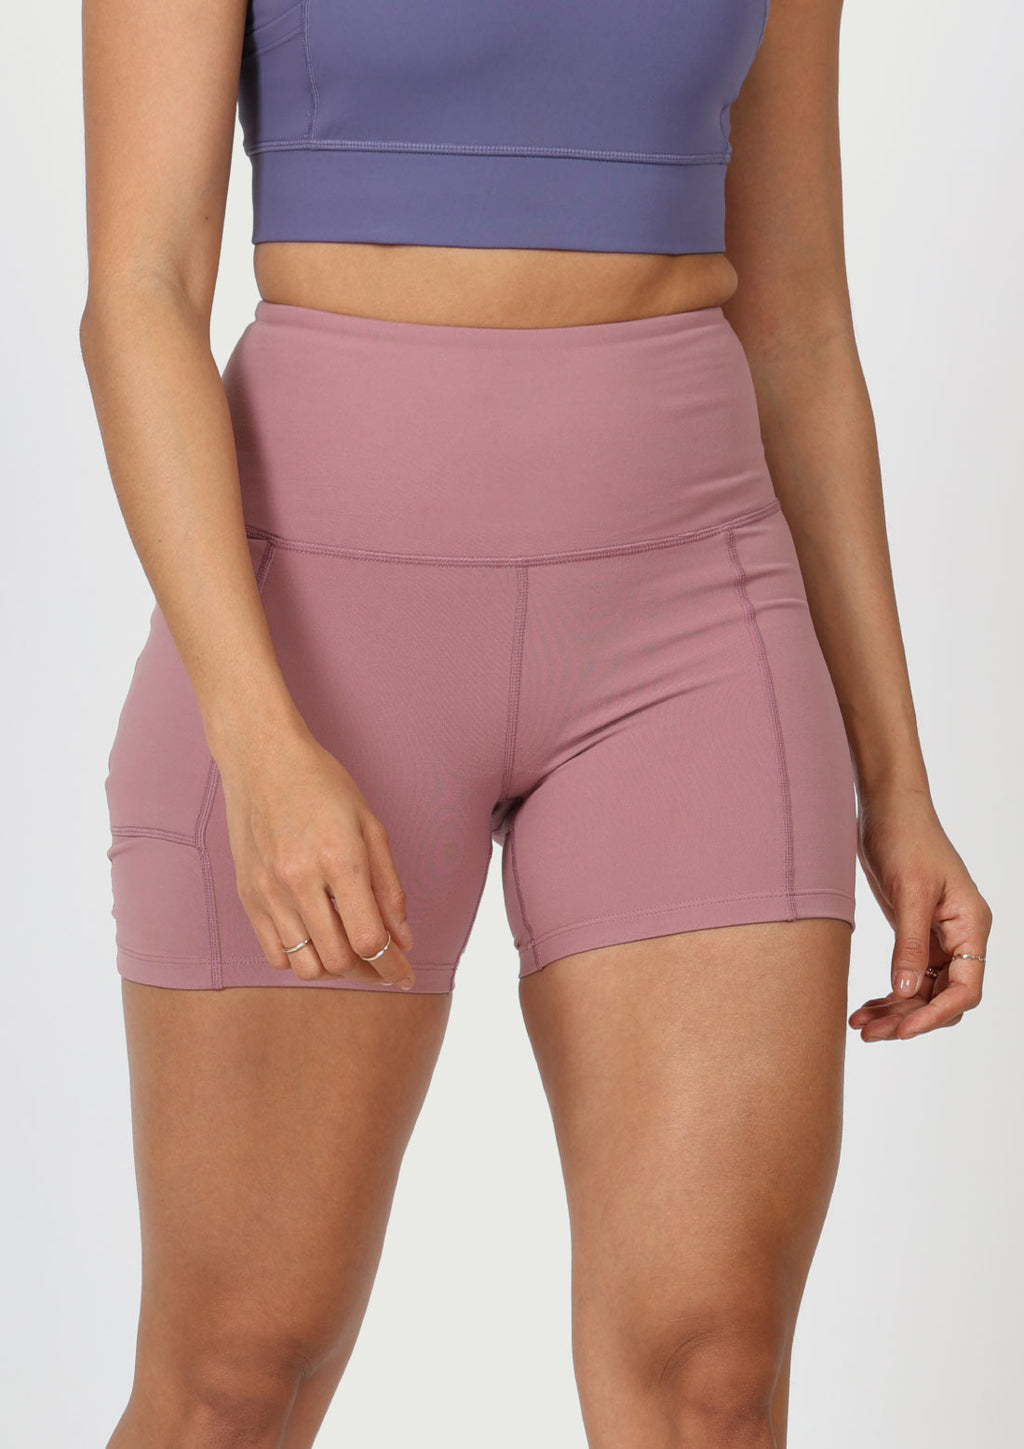 Buy Knee Length Shorts for Women Online from Blissclub